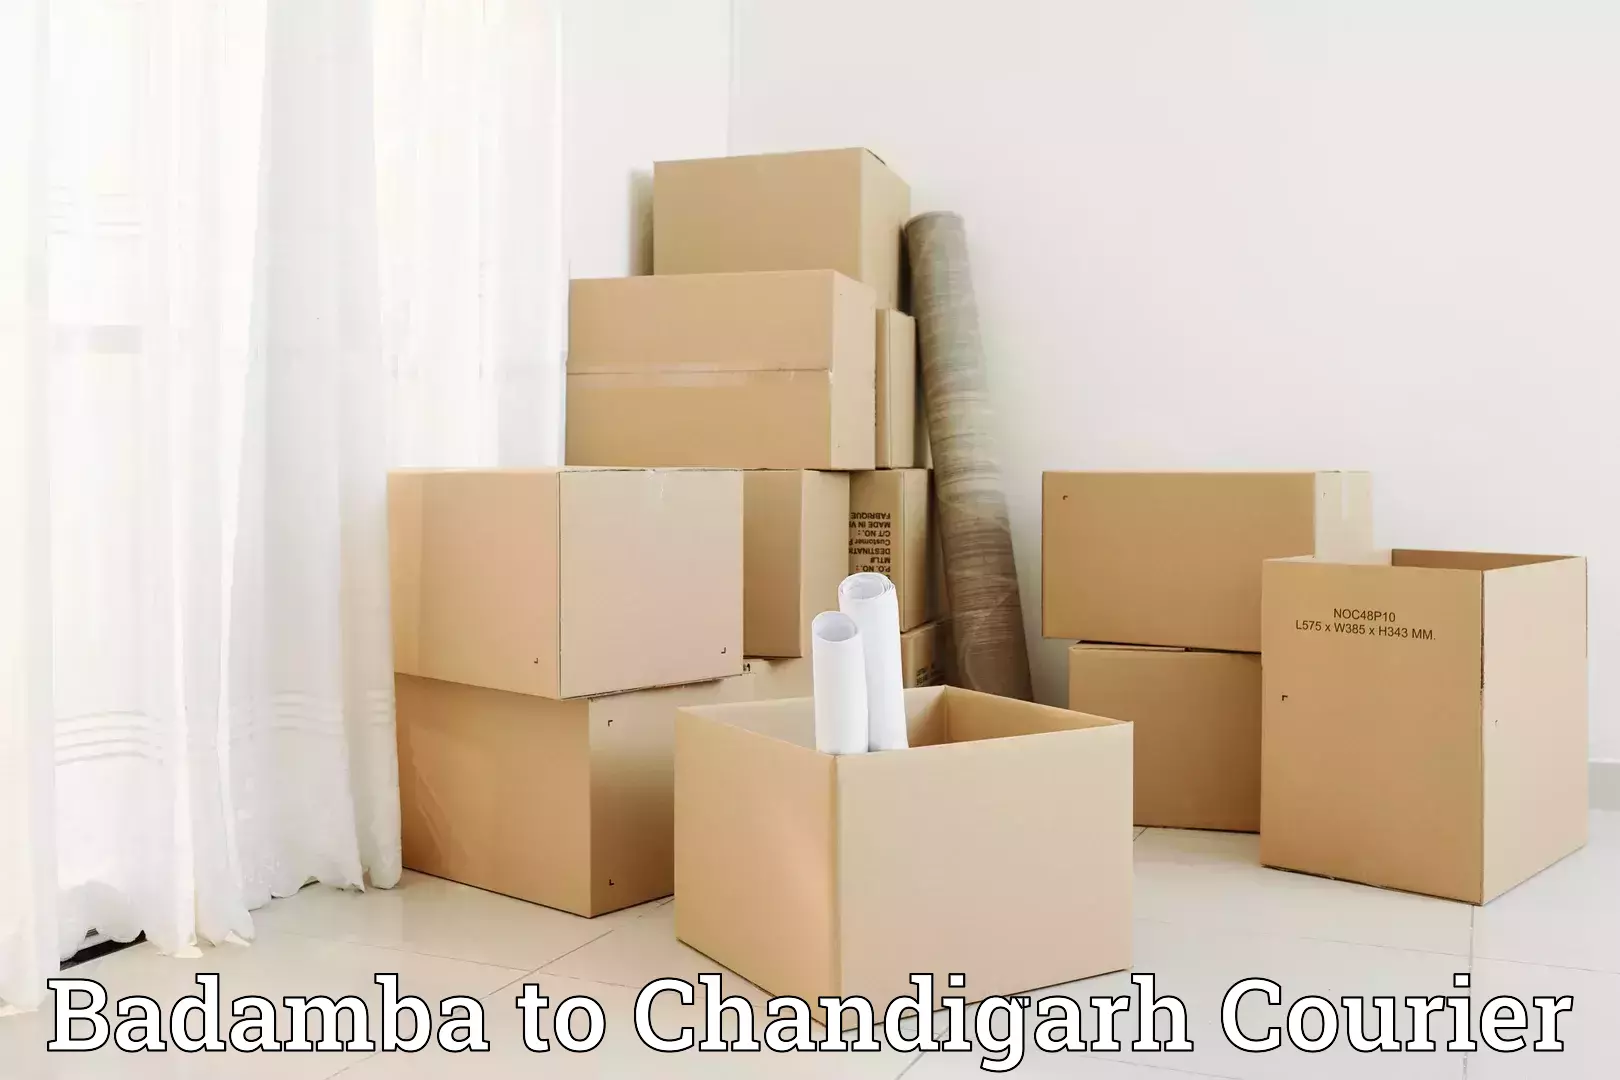 Moving and packing experts Badamba to Chandigarh